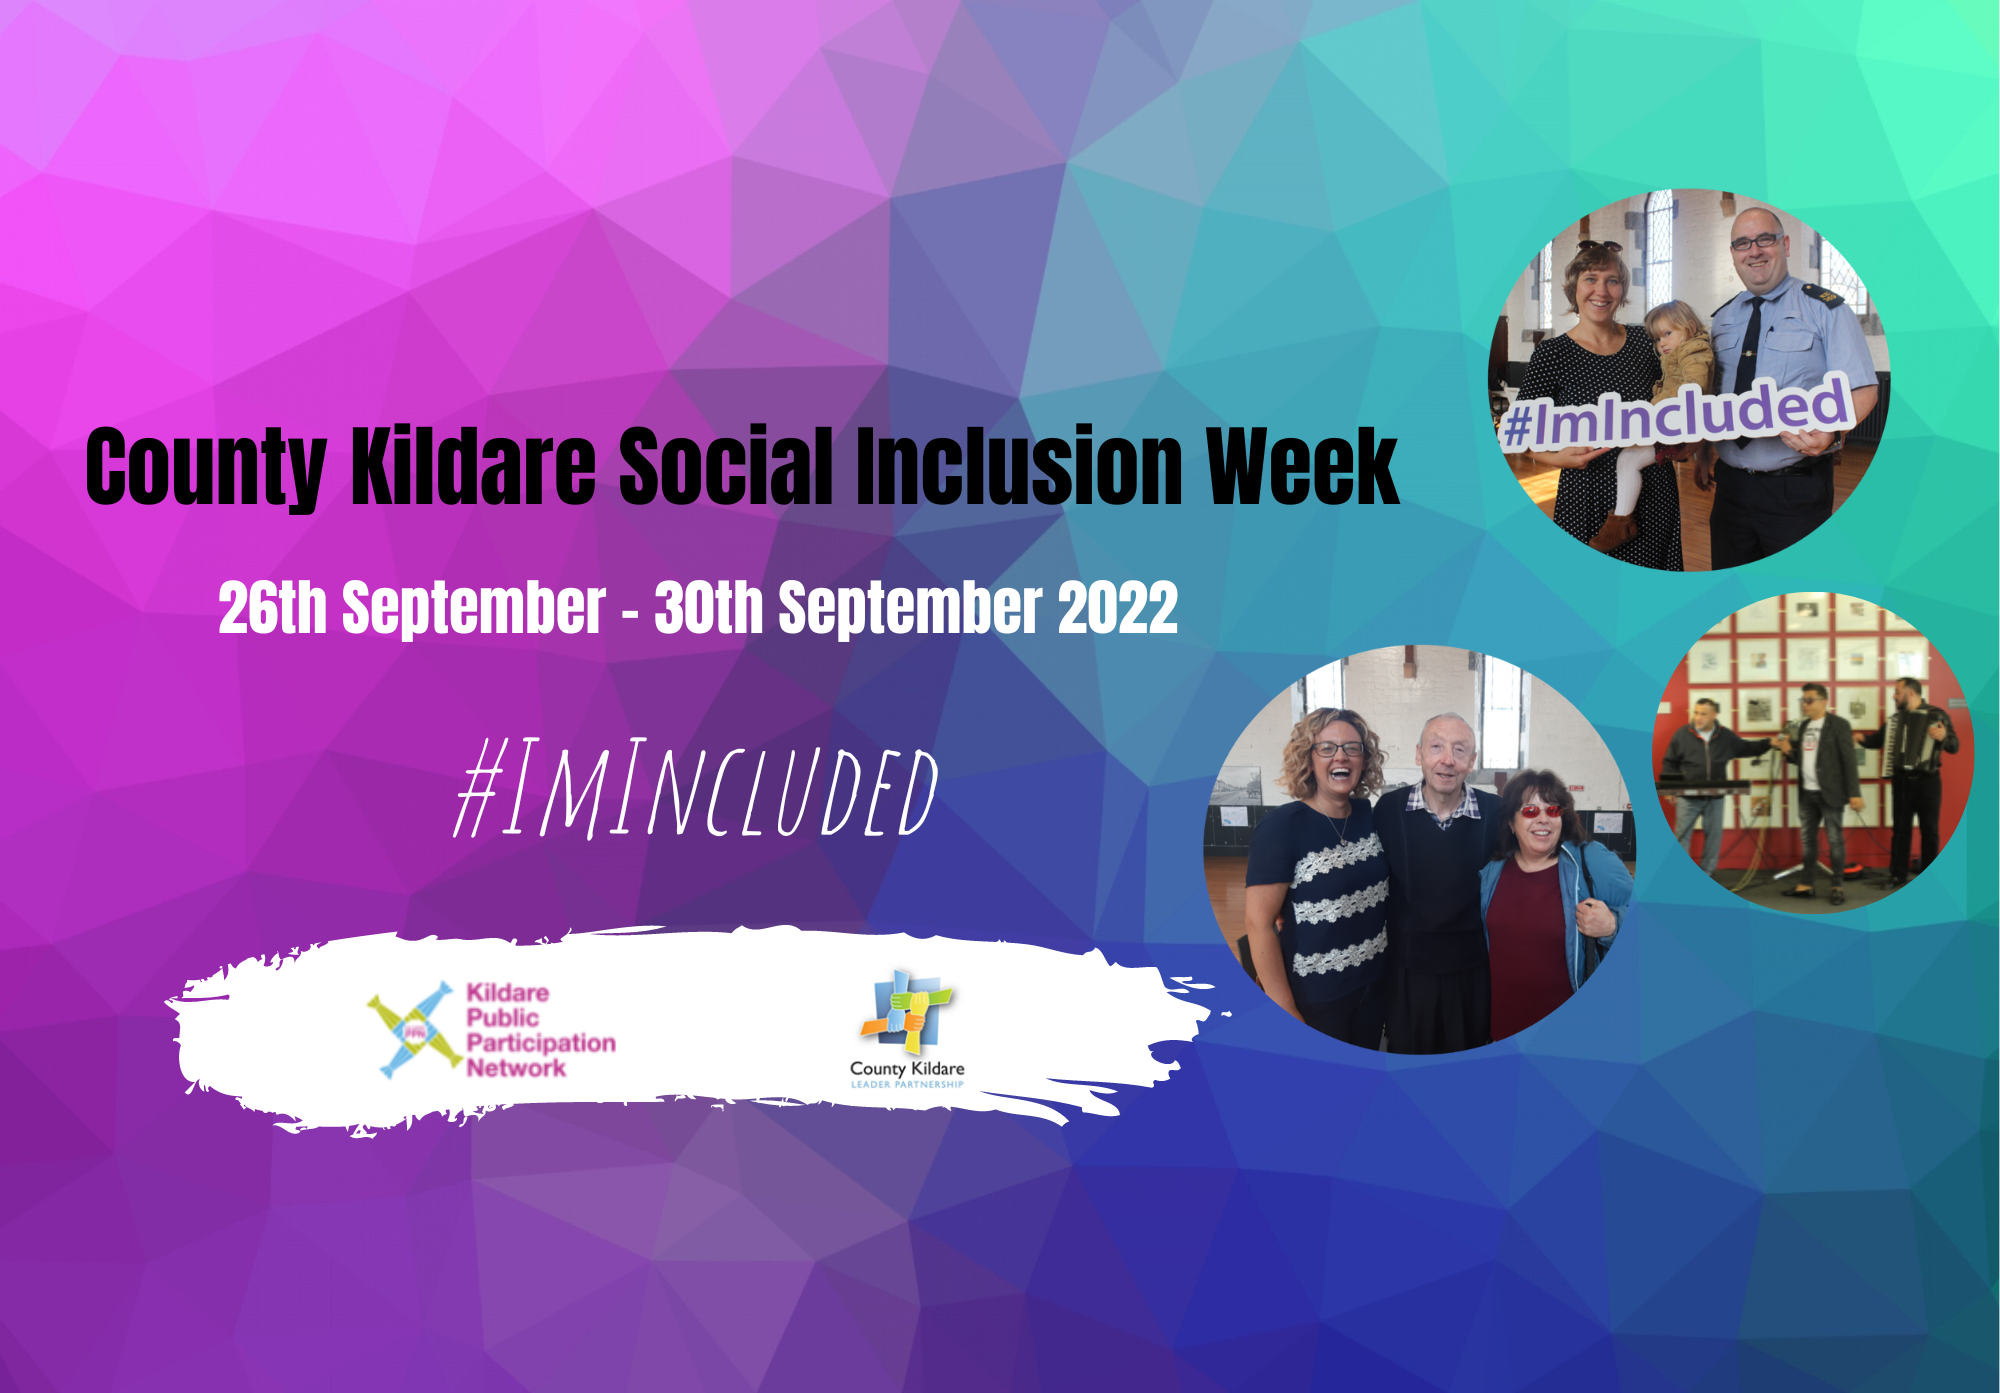 County Kildare Social Inclusion Week 2022